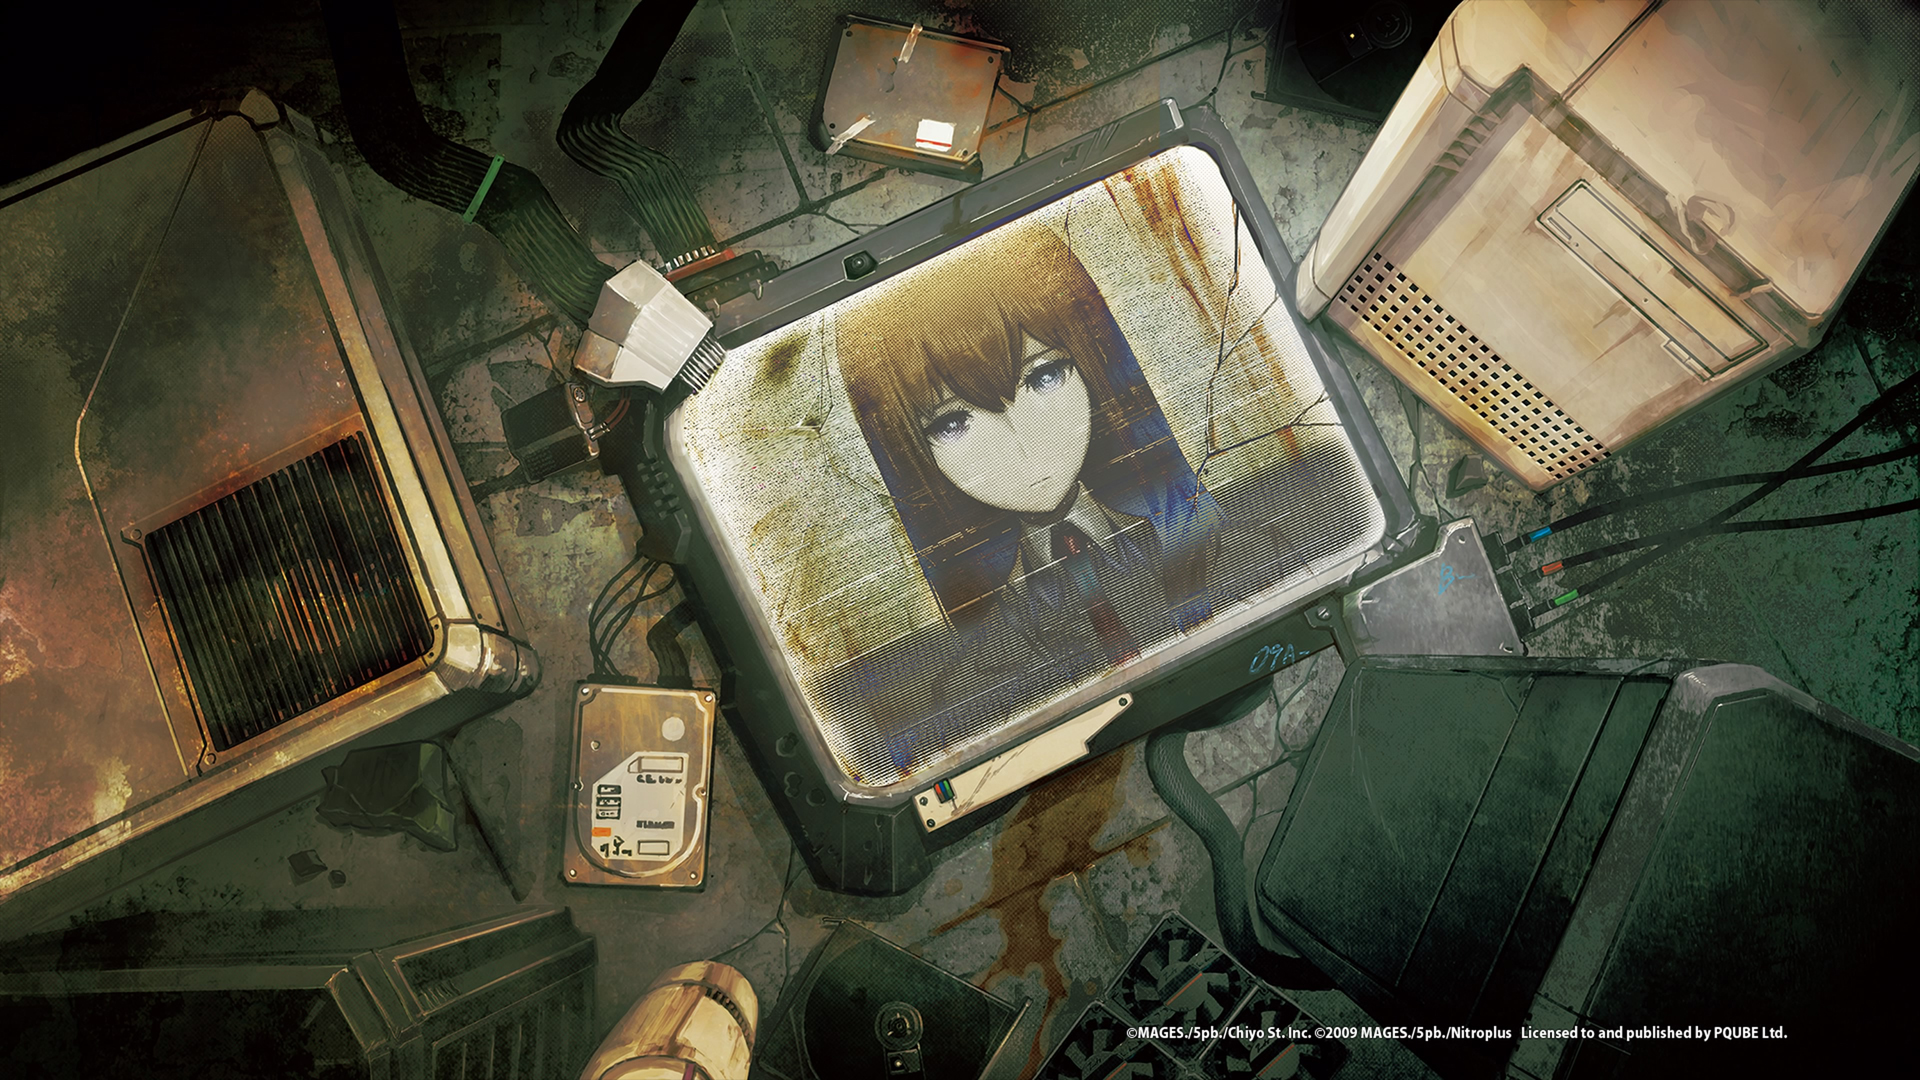 Kurisu Makise on a broken monitor Wallpaper from Steins;Gate